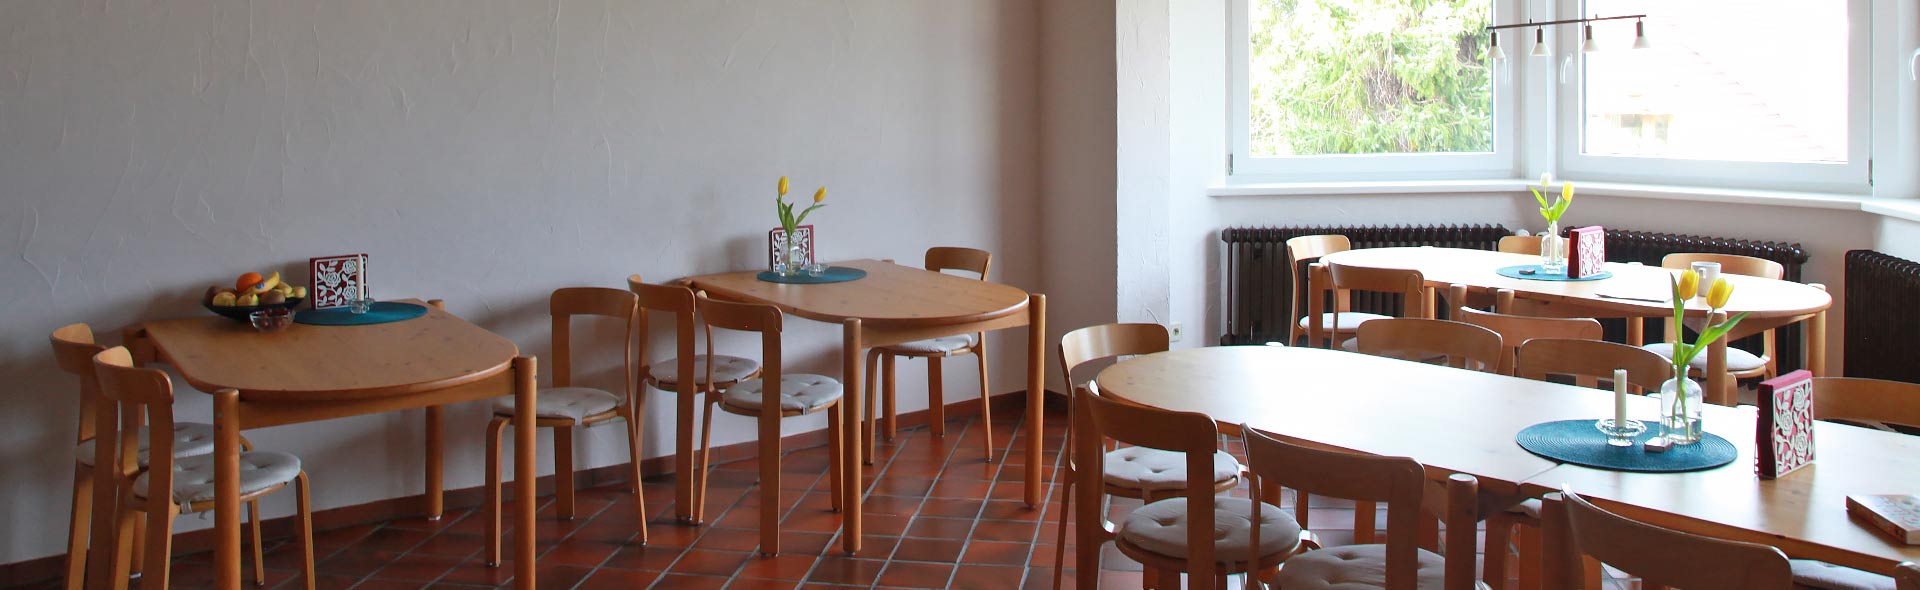 OJC Begegnen – Freundlicher Essraum mit Vollholz-Einrichtung, ziegelroten Bodenfließen, großer Fensterfront und einer zugänglichen Gästeküche.